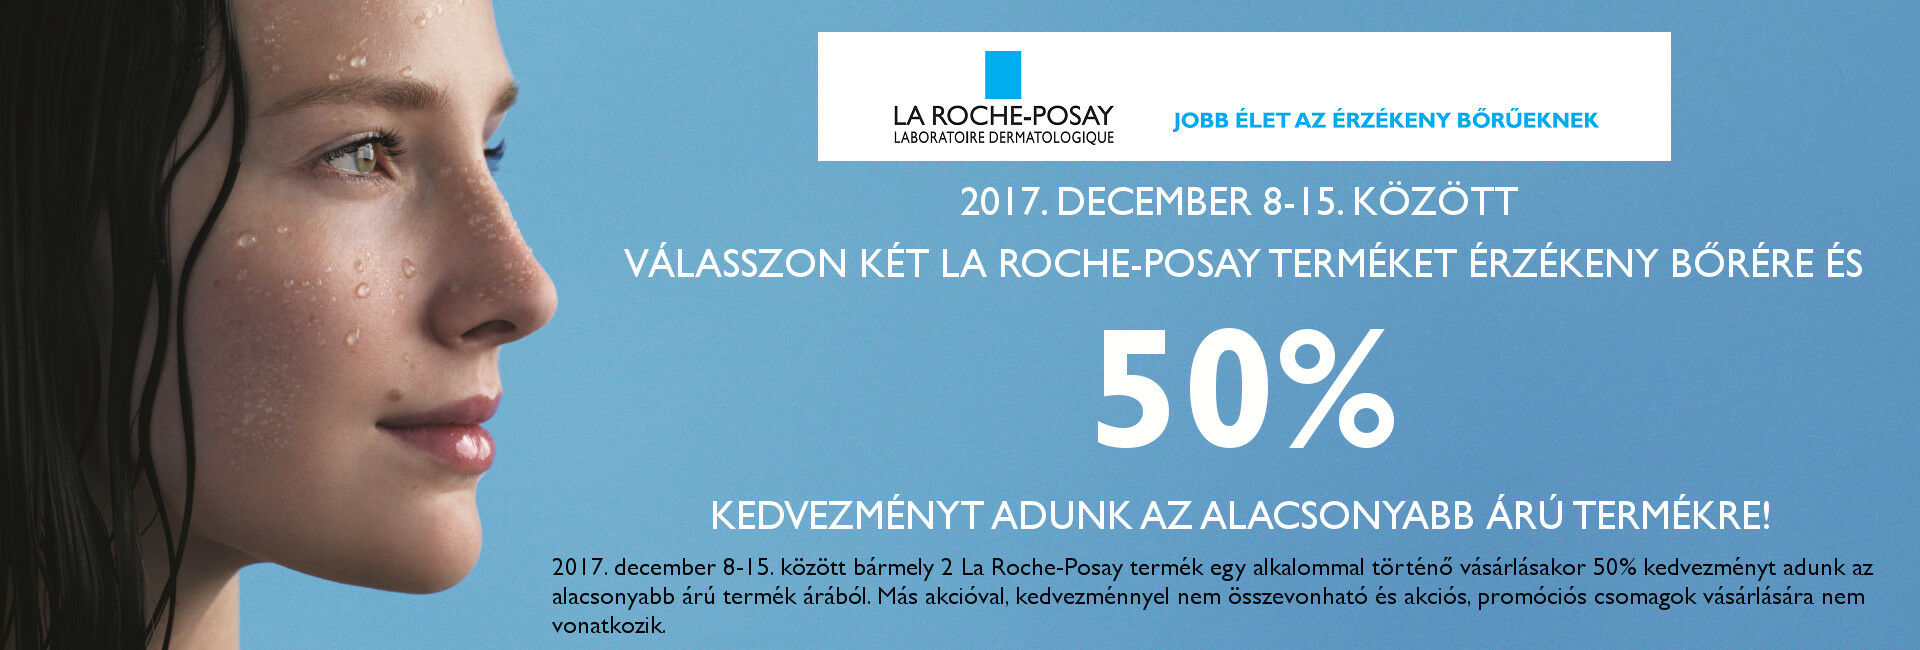 A 2. La Roche-Posay terméket 50% kedvezménnyel adjuk 2017. december 8-15. között!